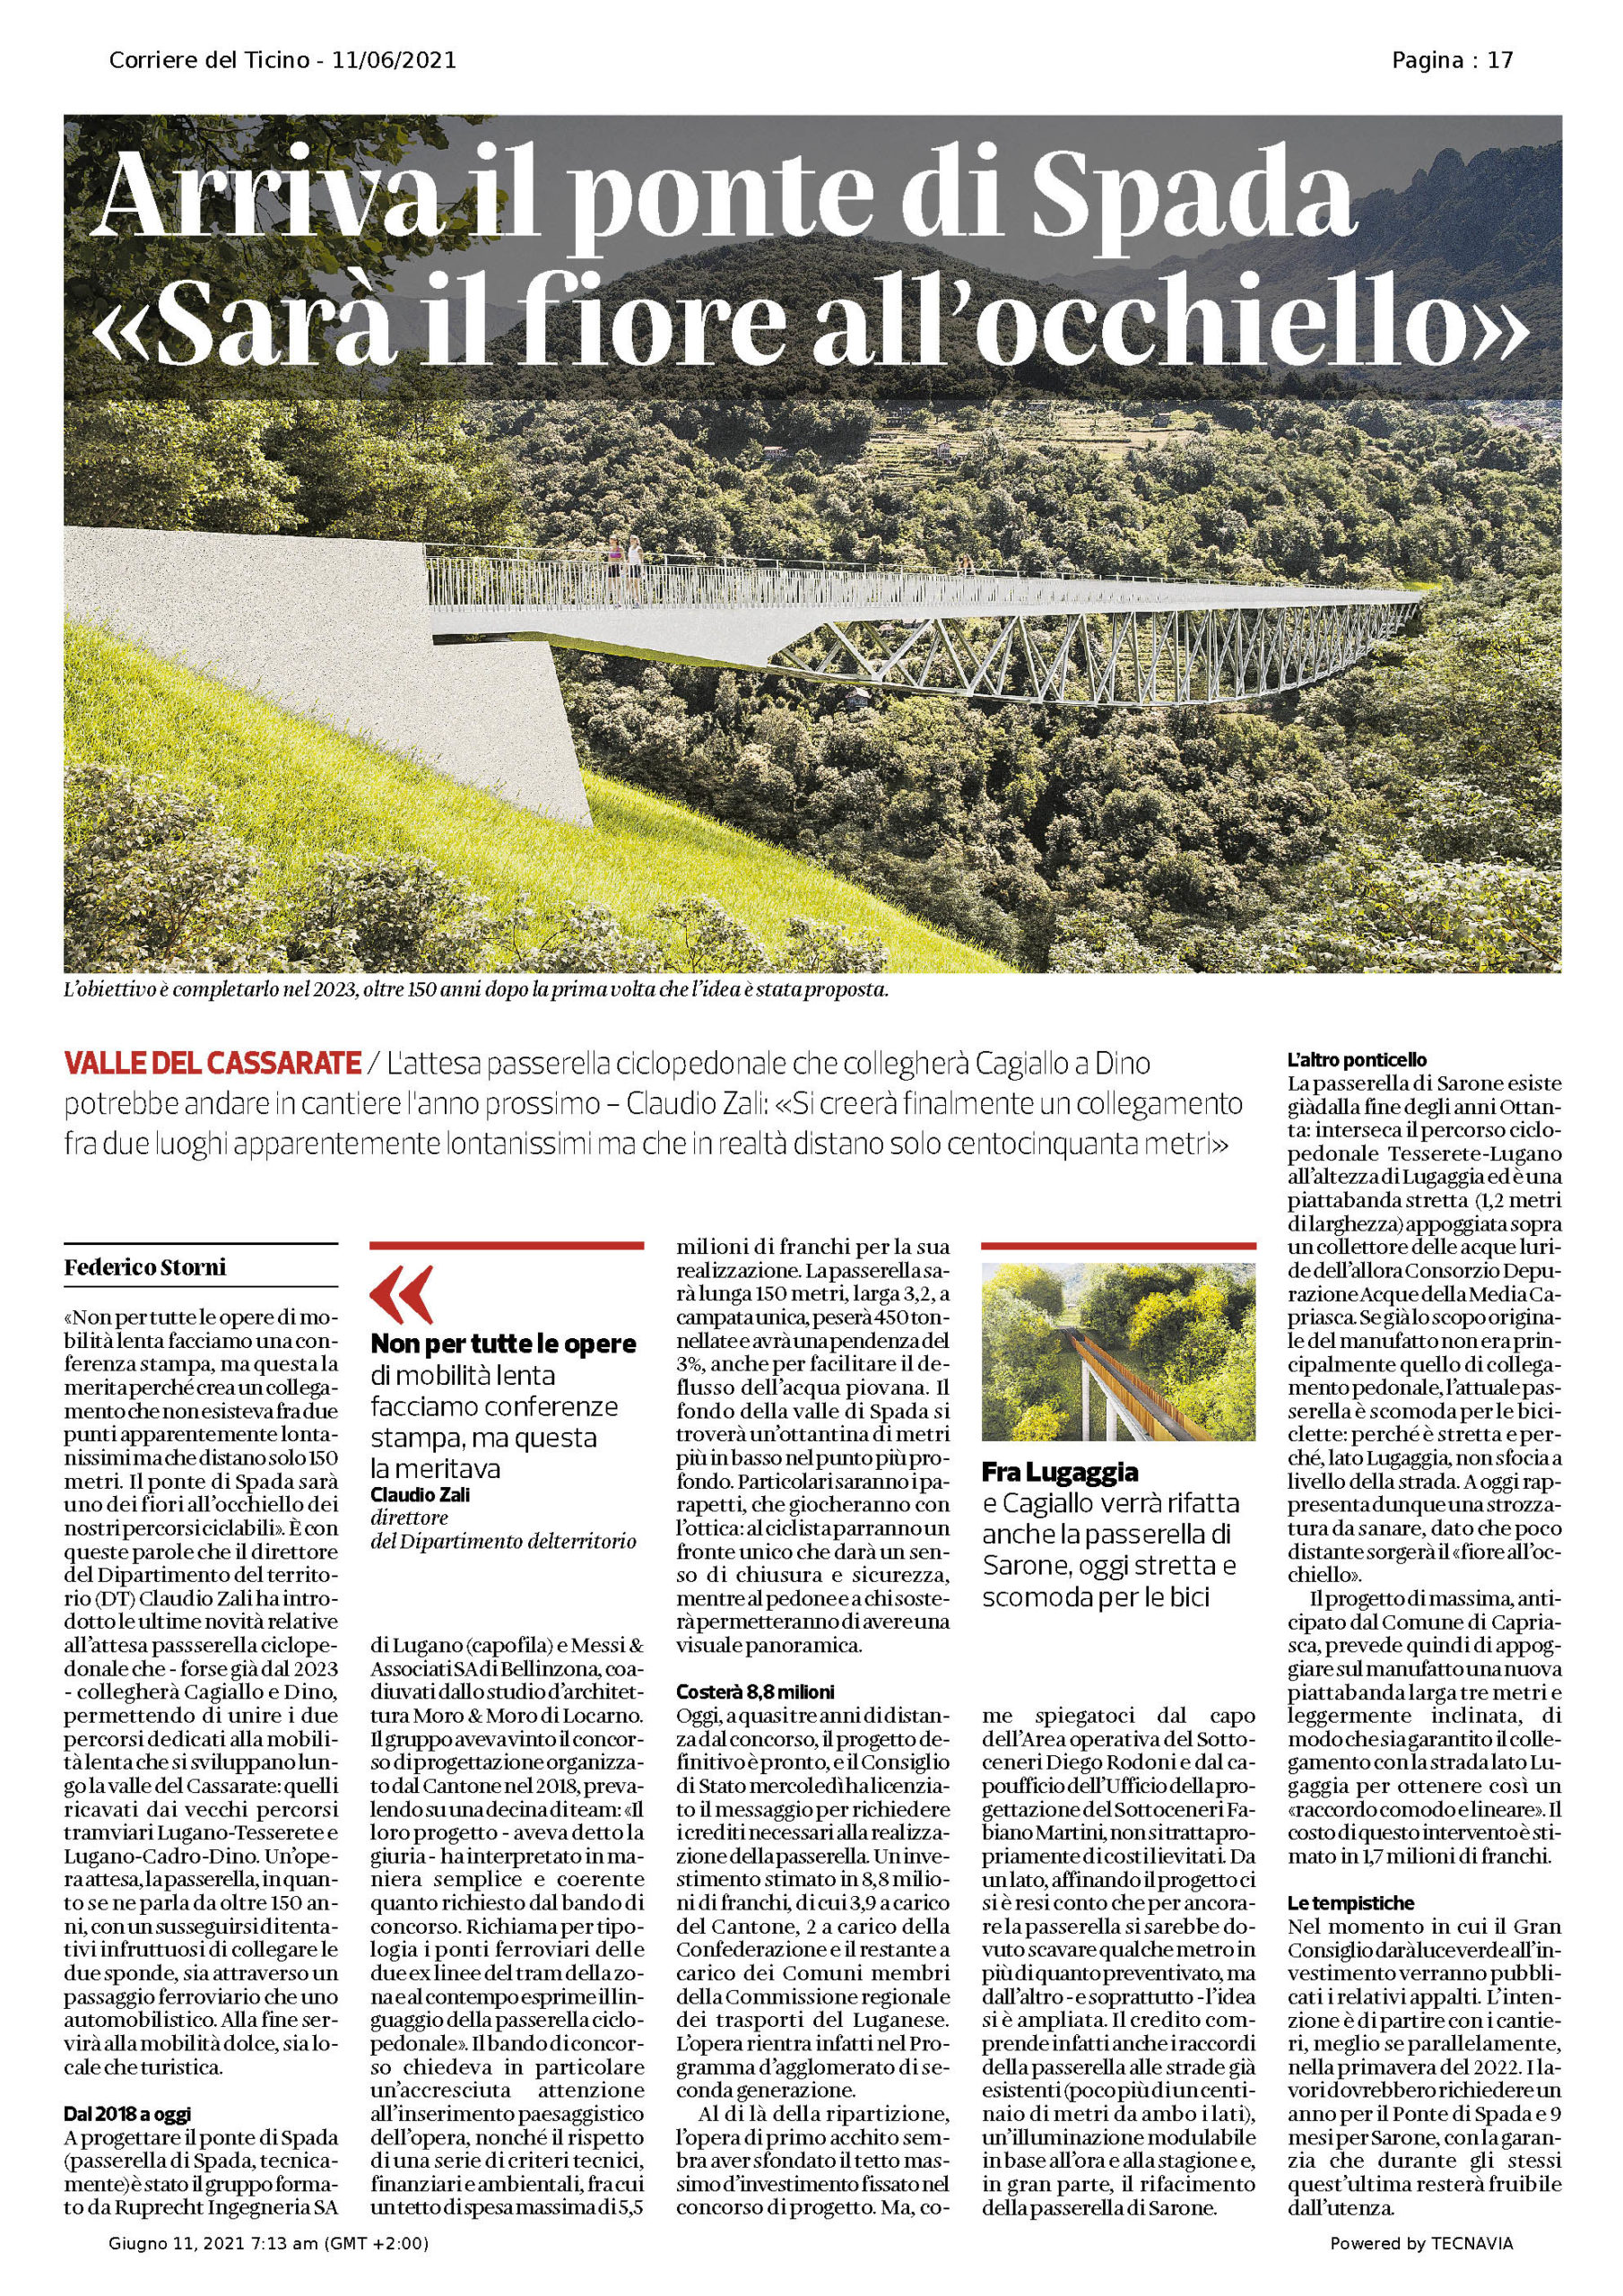 Corriere del Ticino, 11.06.2021